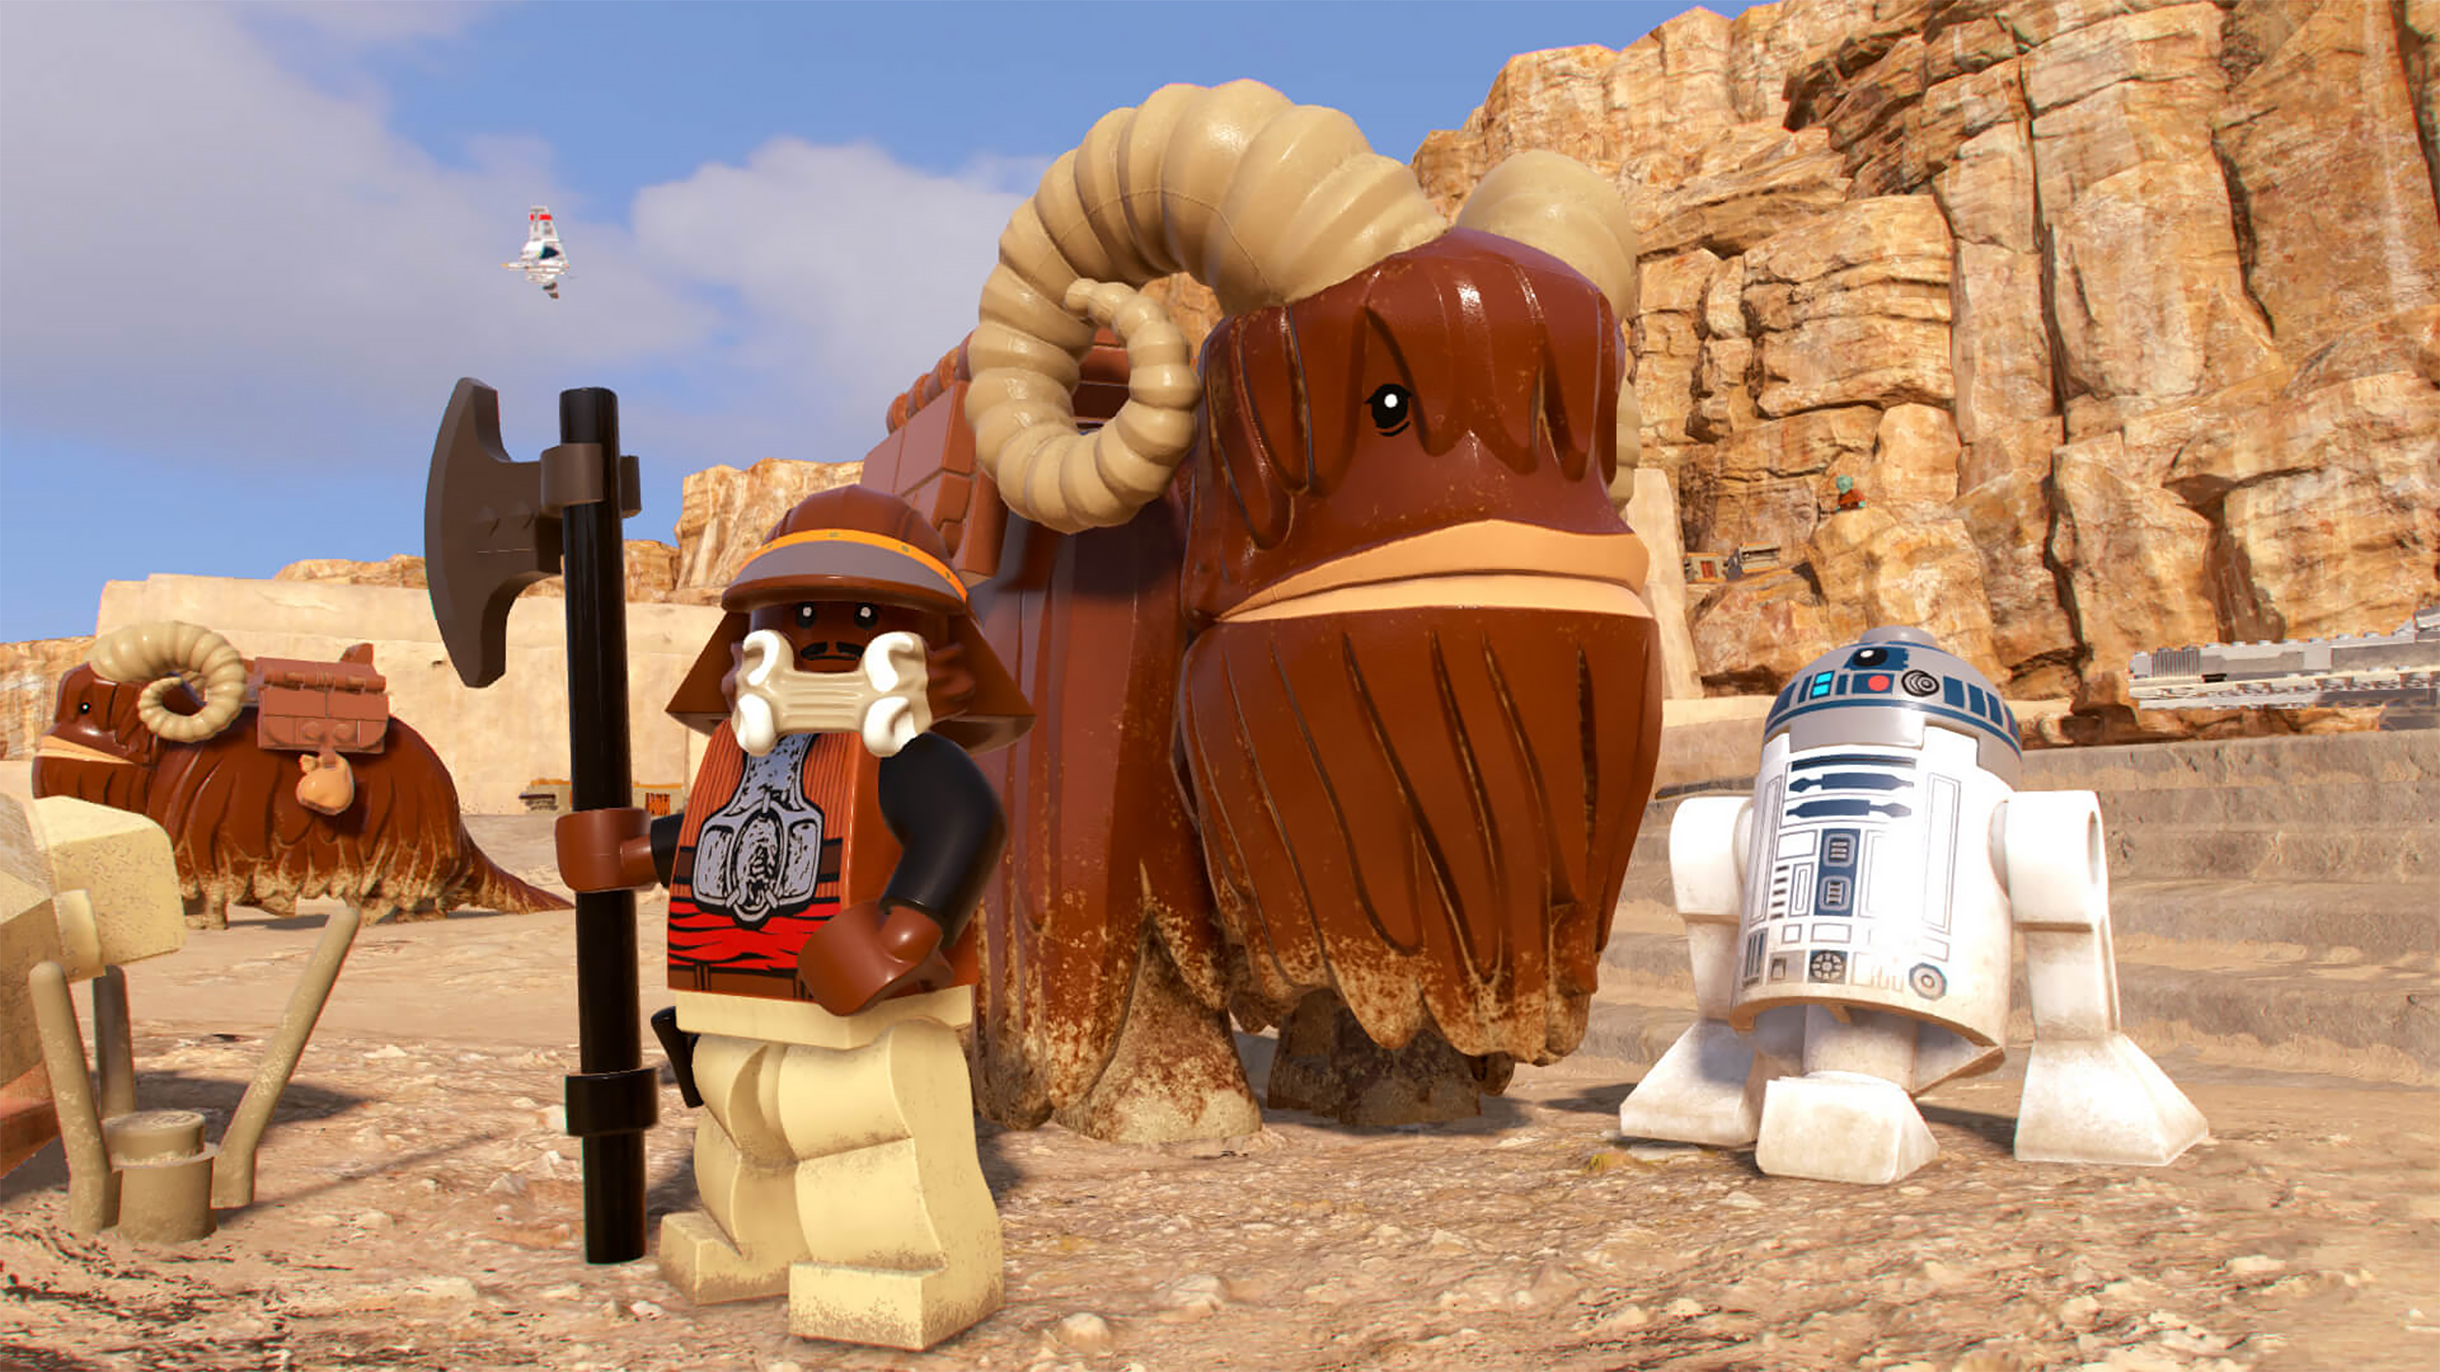 Lego Star Wars (Лего звездные войны) - купить конструктор LEGO